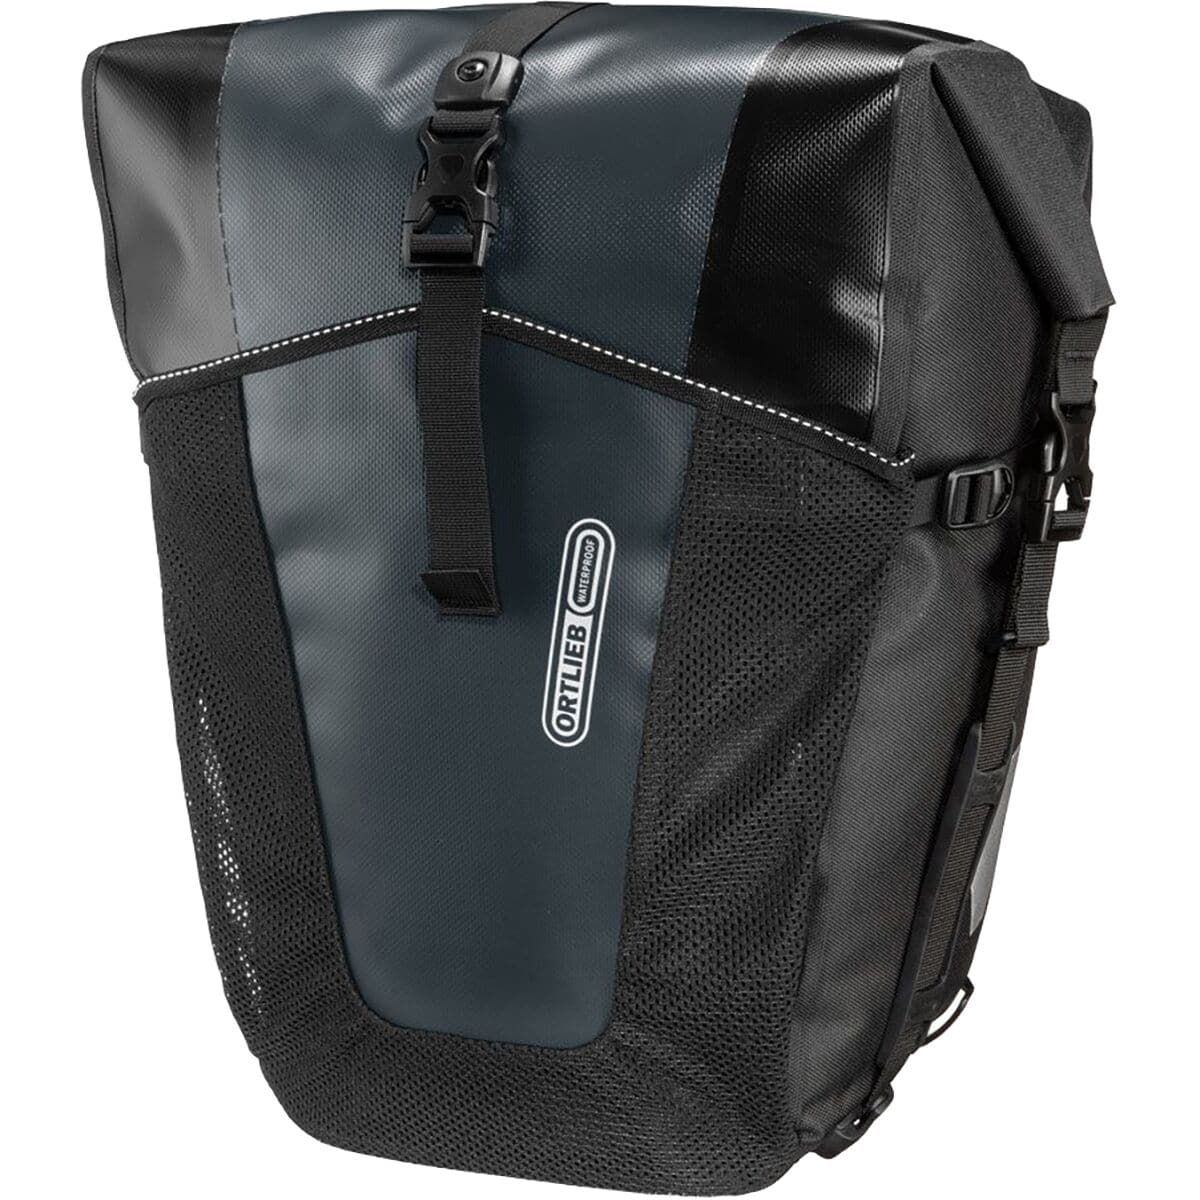 комплект велосипедных сумок newboler Классические кофры back-roller pro — пара Ortlieb, цвет asphalt/black